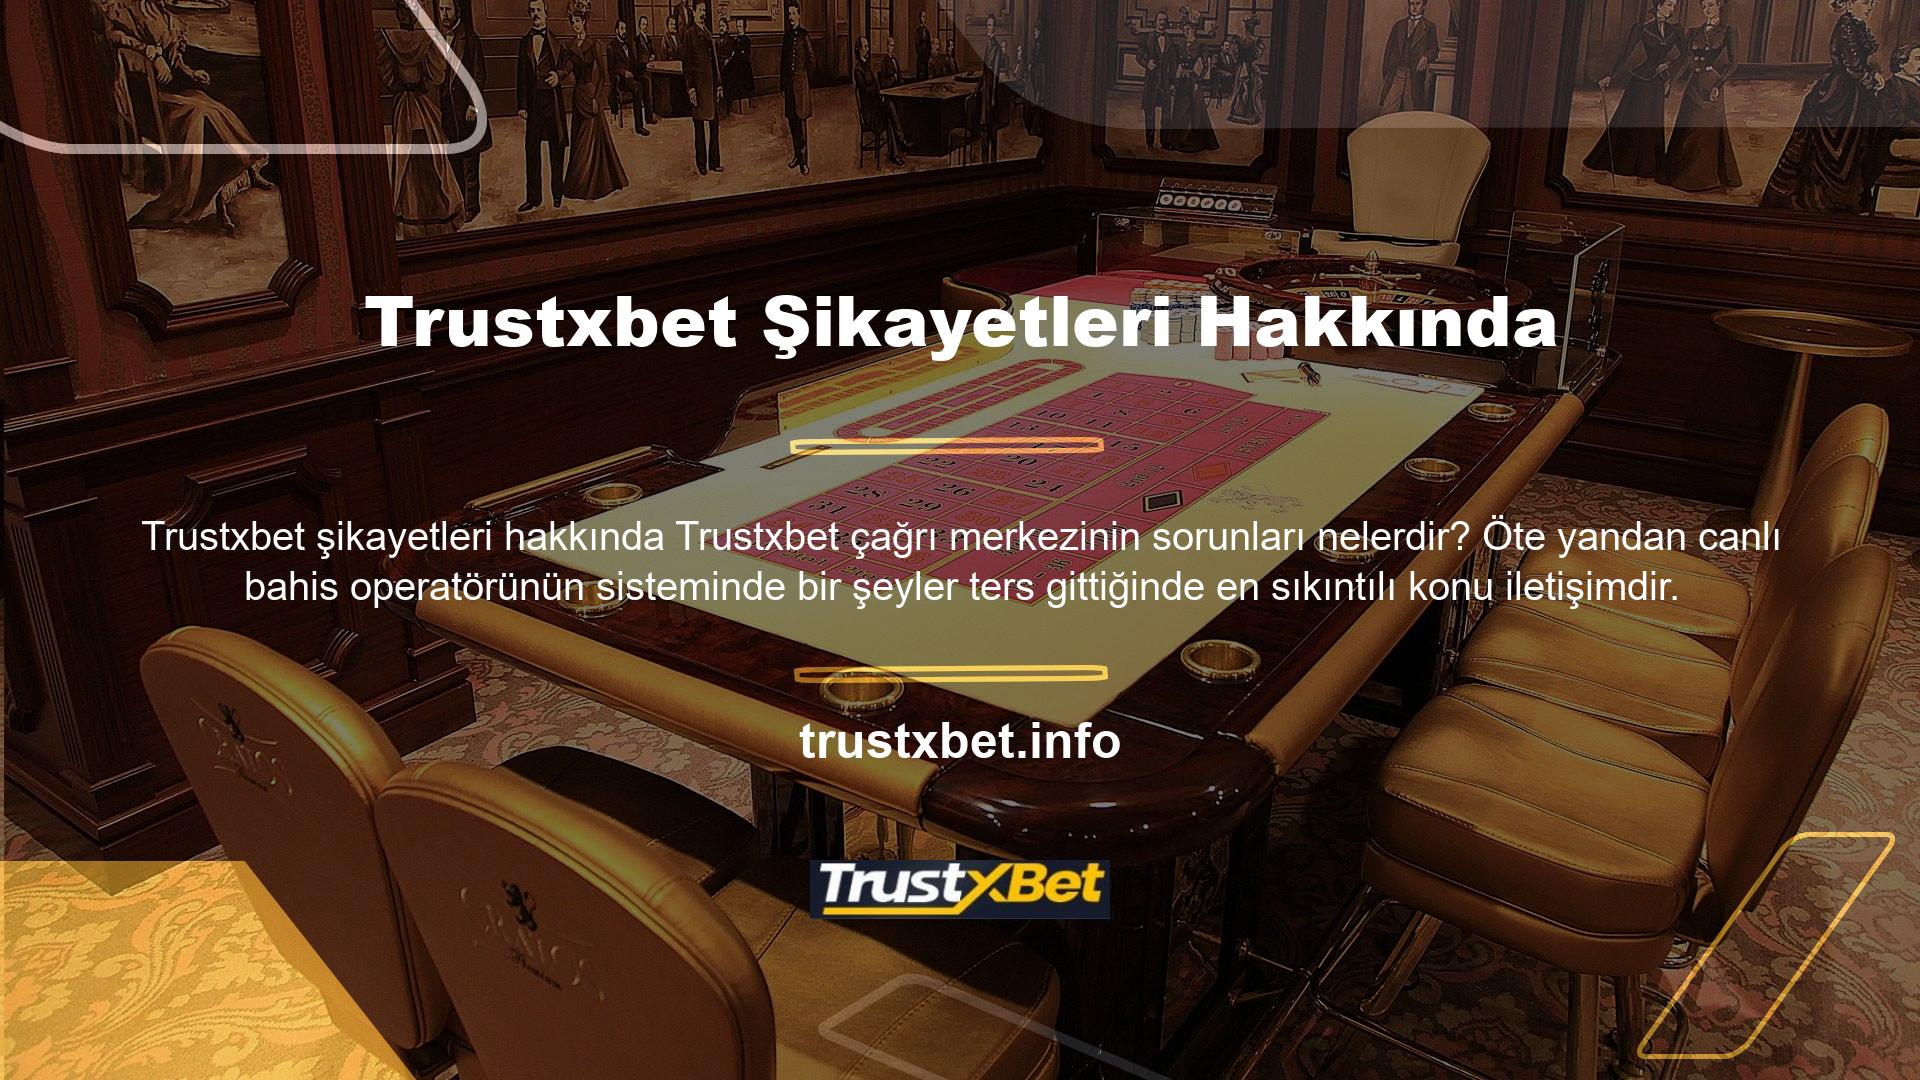 Etkili iletişim, Trustxbet tarafından sağlanan hizmetler aracılığıyla Trustxbet web sitesinin kullanıcılarına büyük fayda sağlar